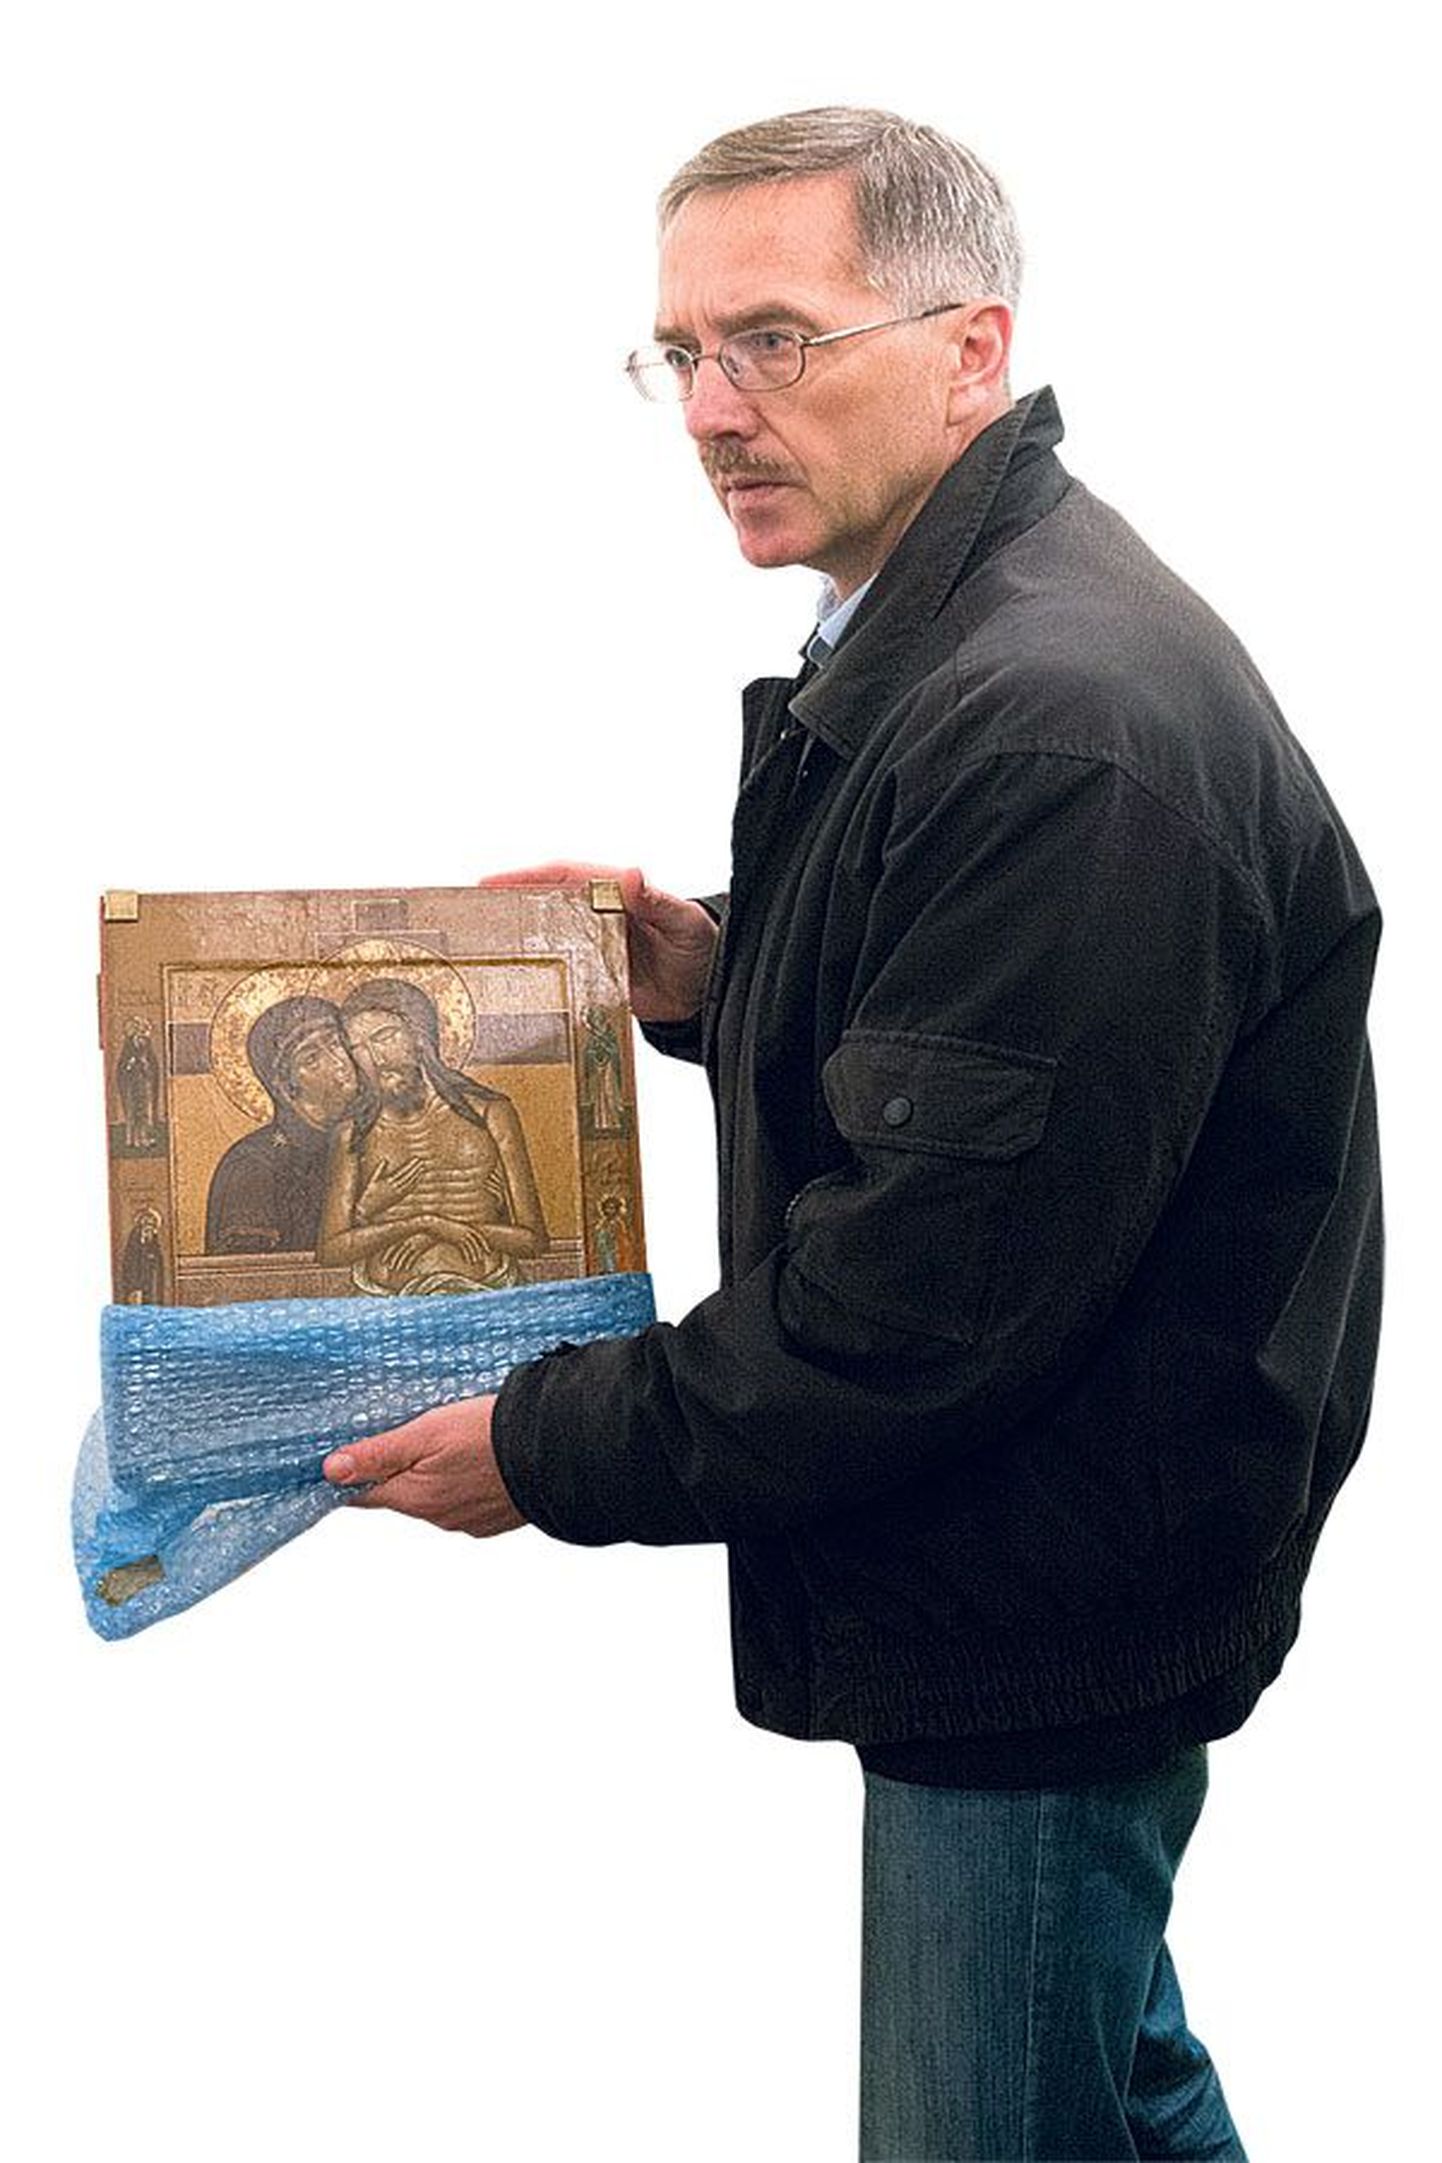 Сергей Иванов демонстрирует икону Гавриила Фролова, которая хотя и хранится в надежном месте, однако недоступна для публики.